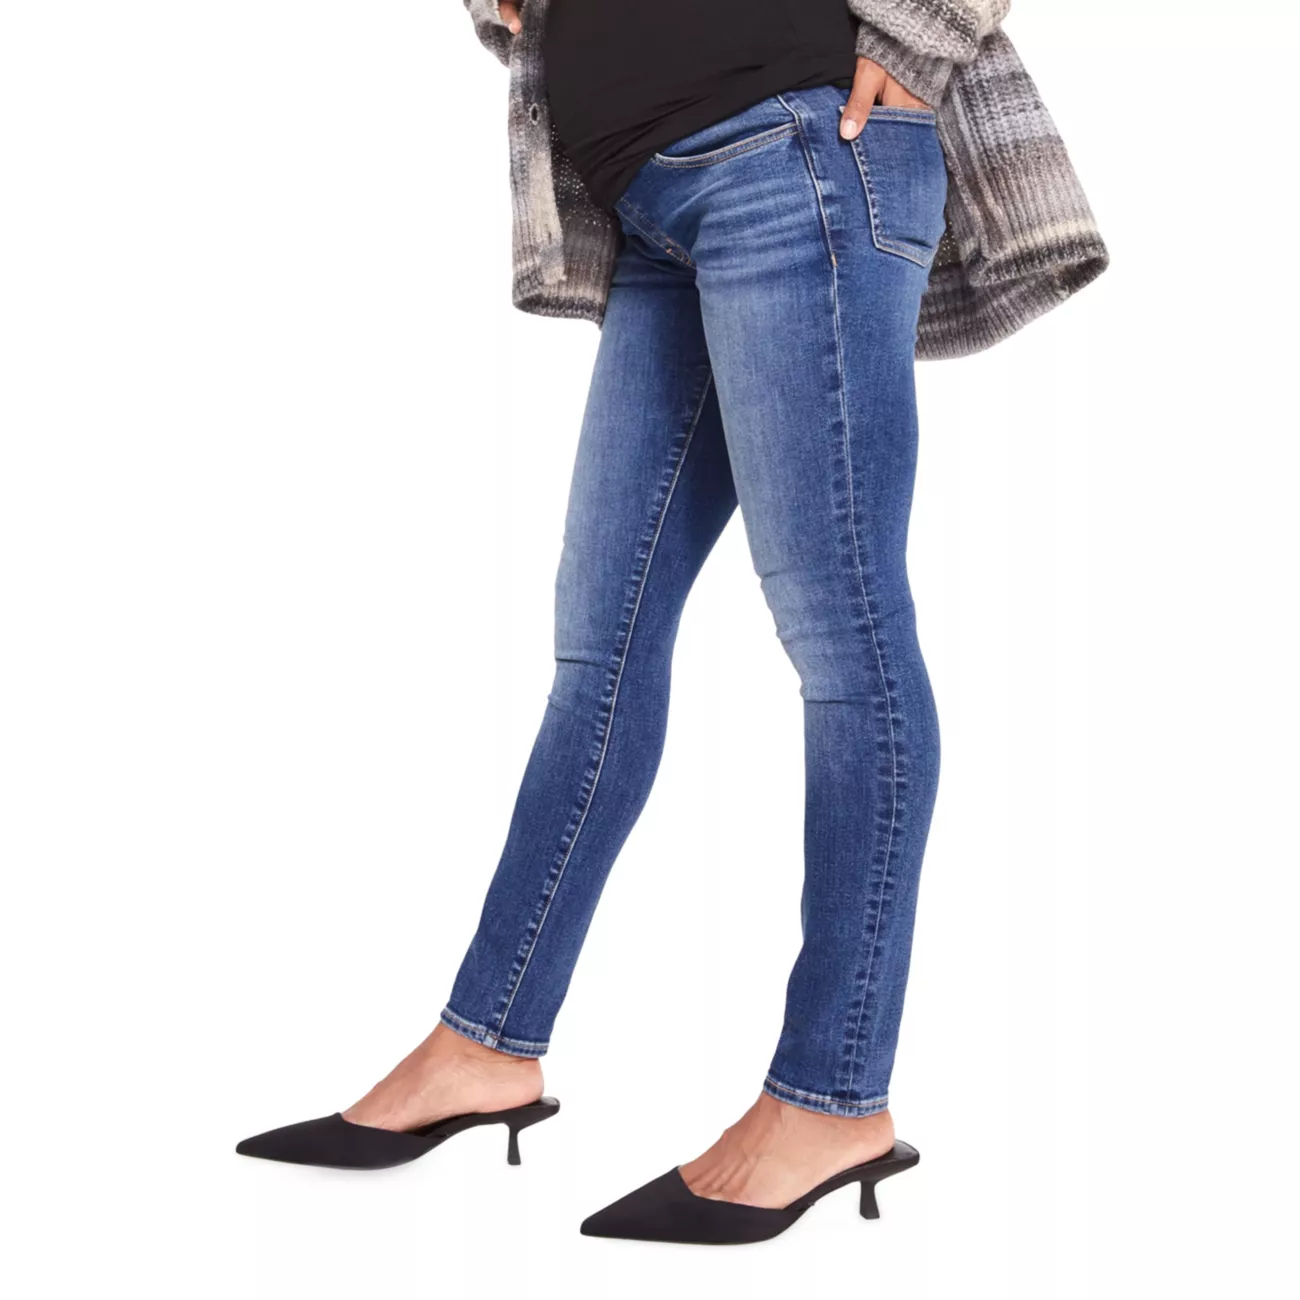 Узкие джинсы для беременных Over The Bump HATCH